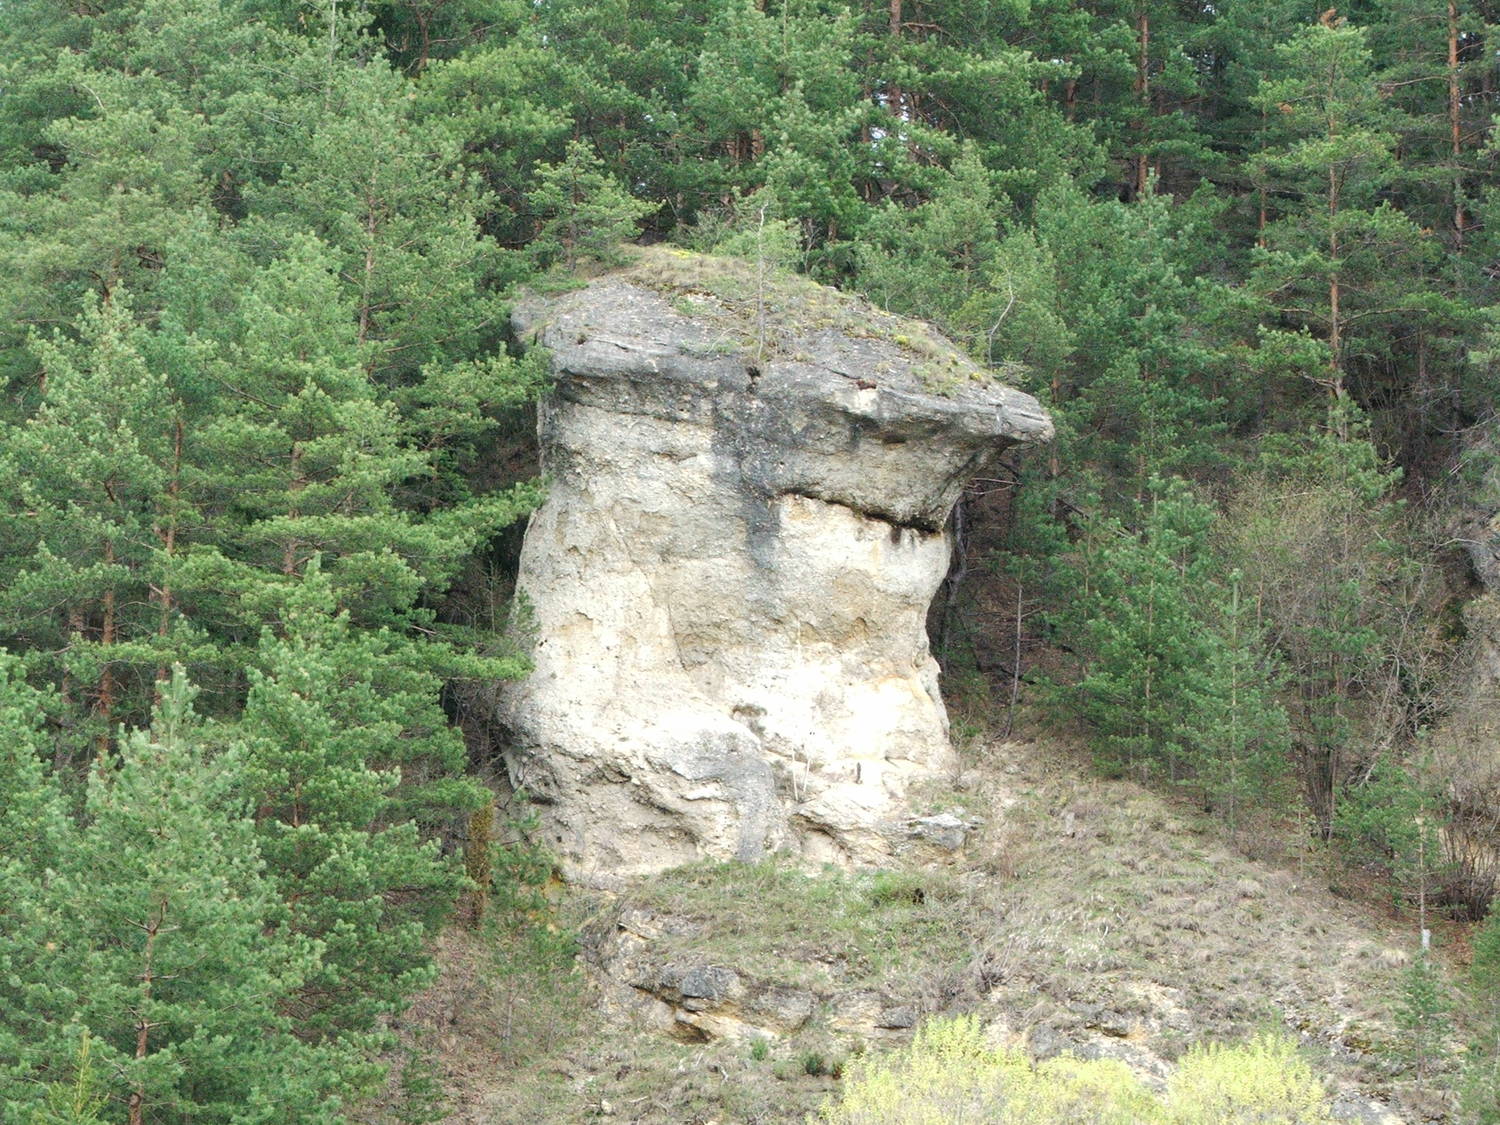 Ľupčiansky skalný hríb